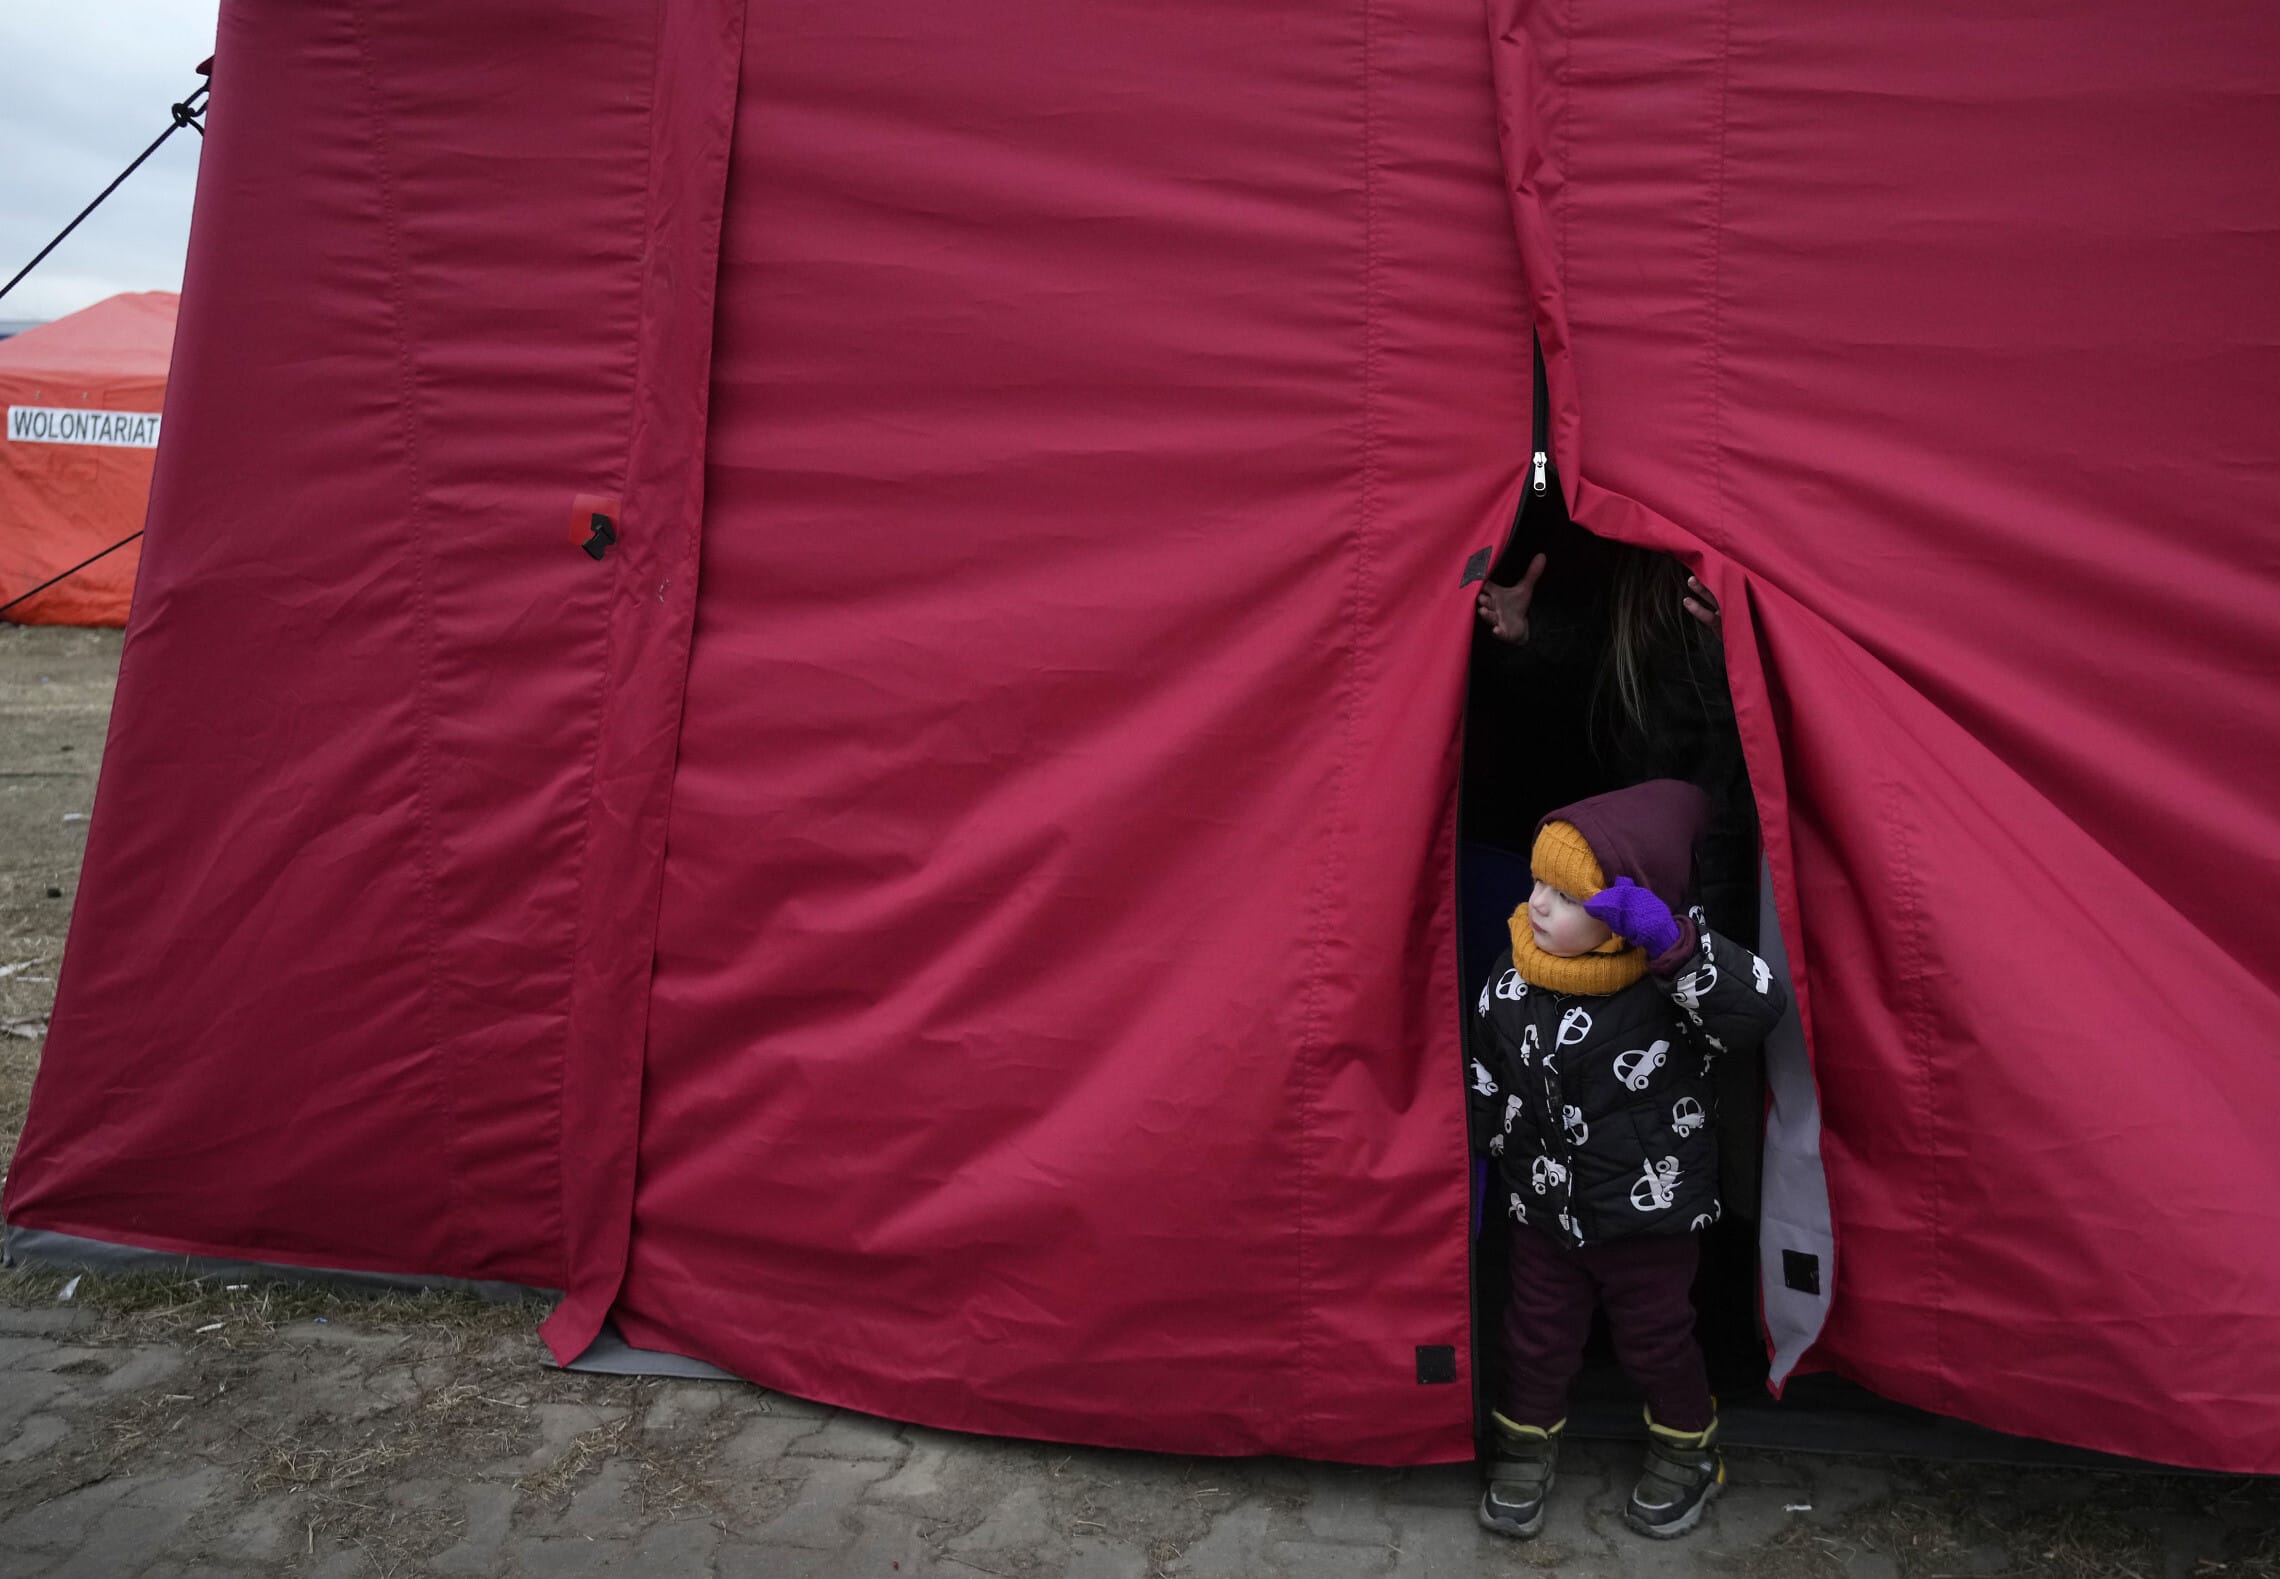 ילד שנמלט מאוקראינה מציץ מהאוהל שבו הוא נמצא במרכז סיוע בפשמישל שבפולין, 8 במרץ 2022 (צילום: Czarek Sokolowski, AP)